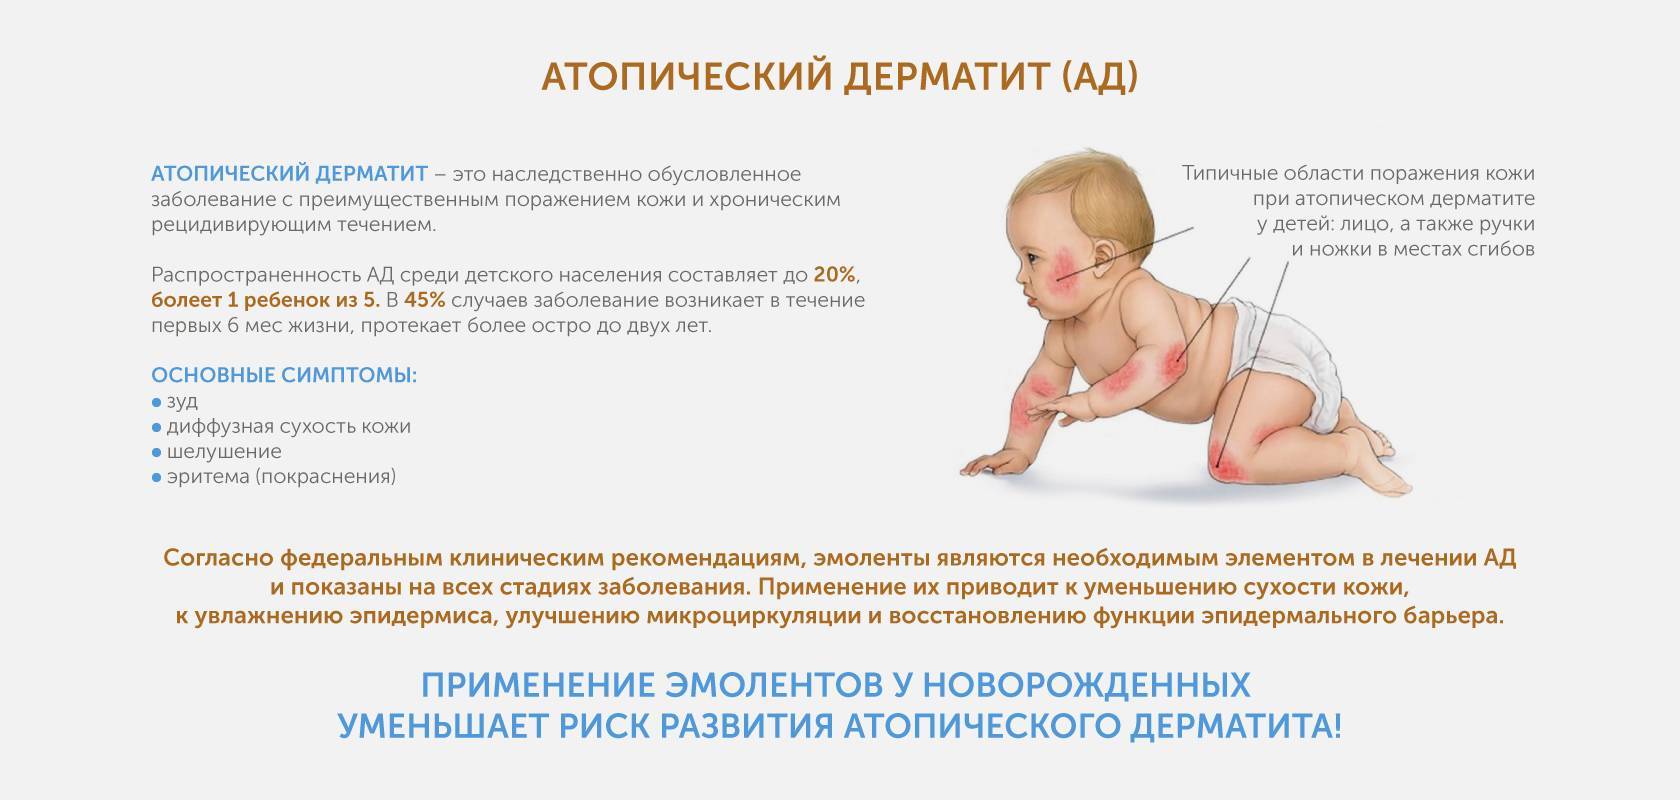 Мдоу «детский сад  №144». атопический (аллергический) дерматит у ребенка. симптомы и лечение